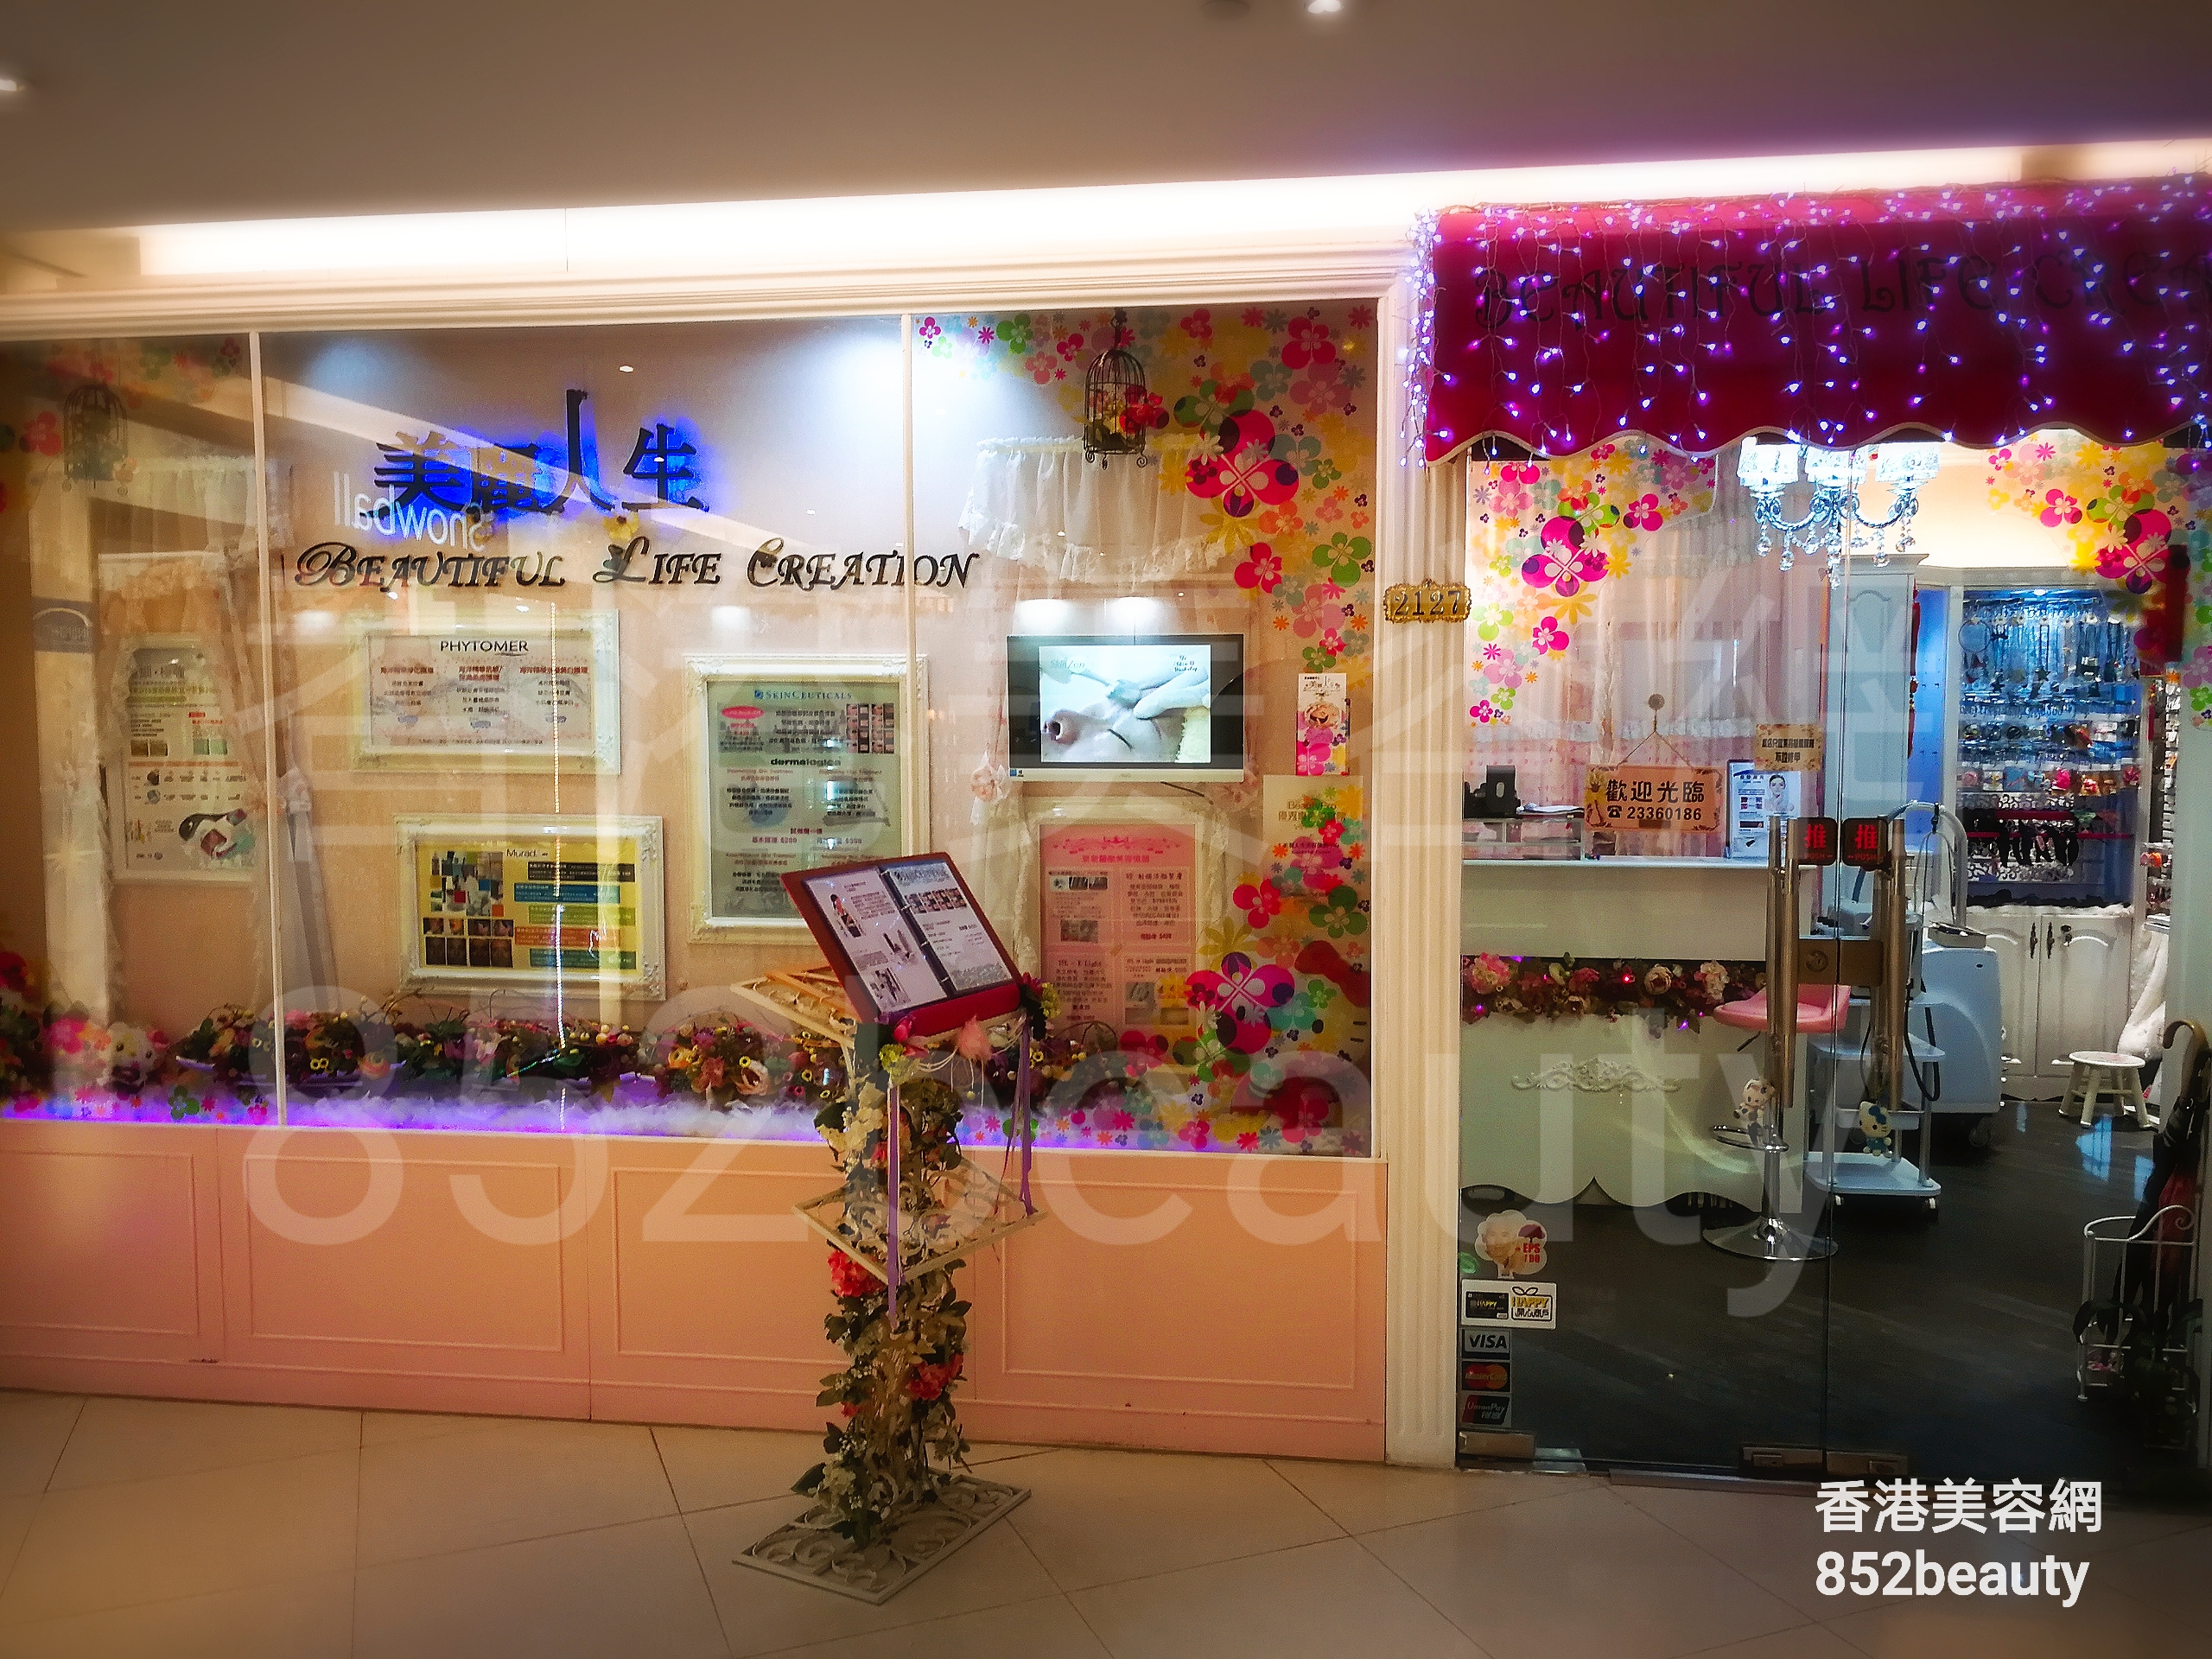 香港美容網 Hong Kong Beauty Salon 美容院 / 美容師: 美麗人生